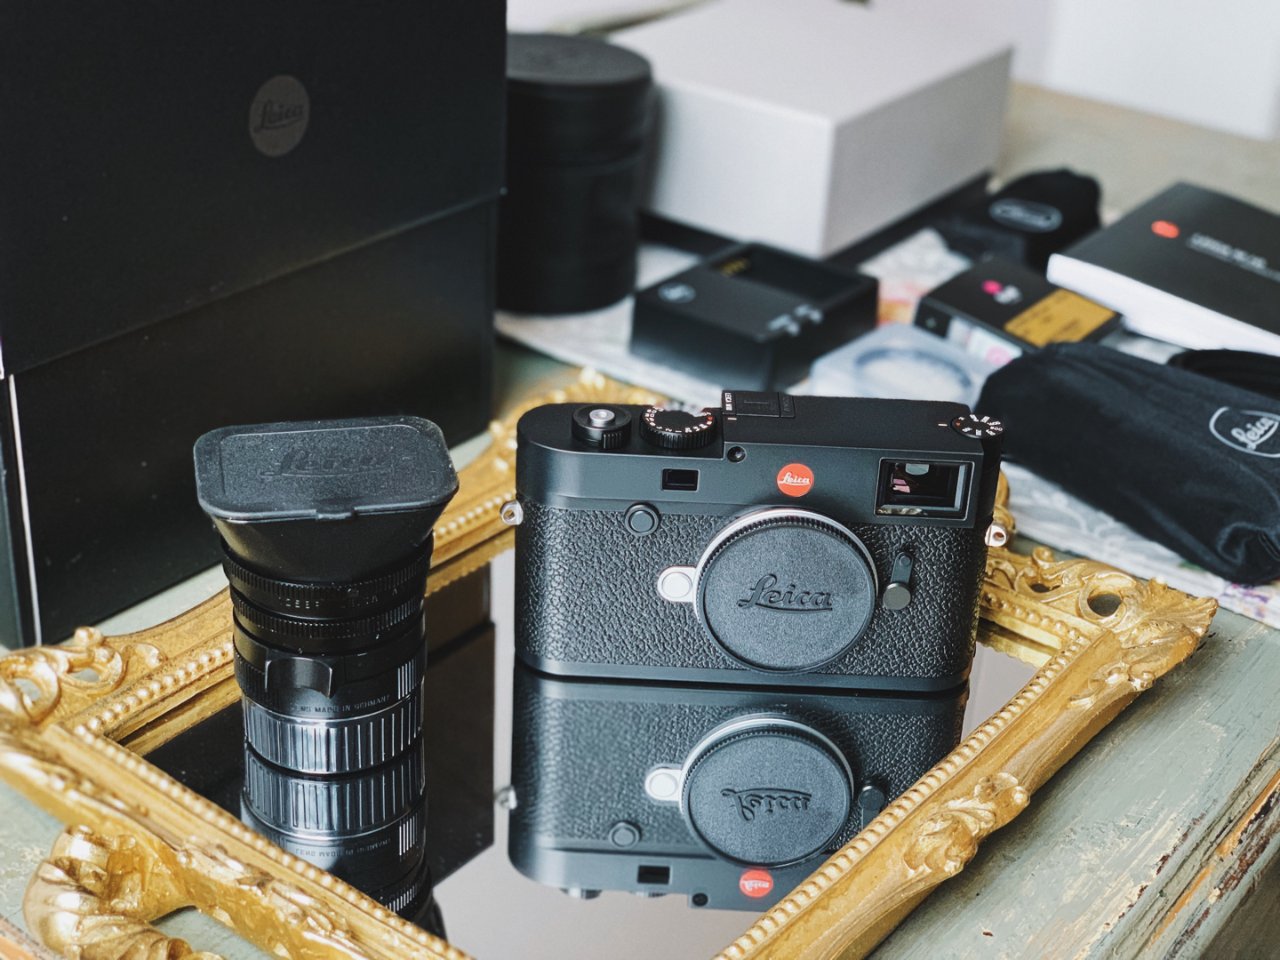 Leica 徕卡,leica M,相机